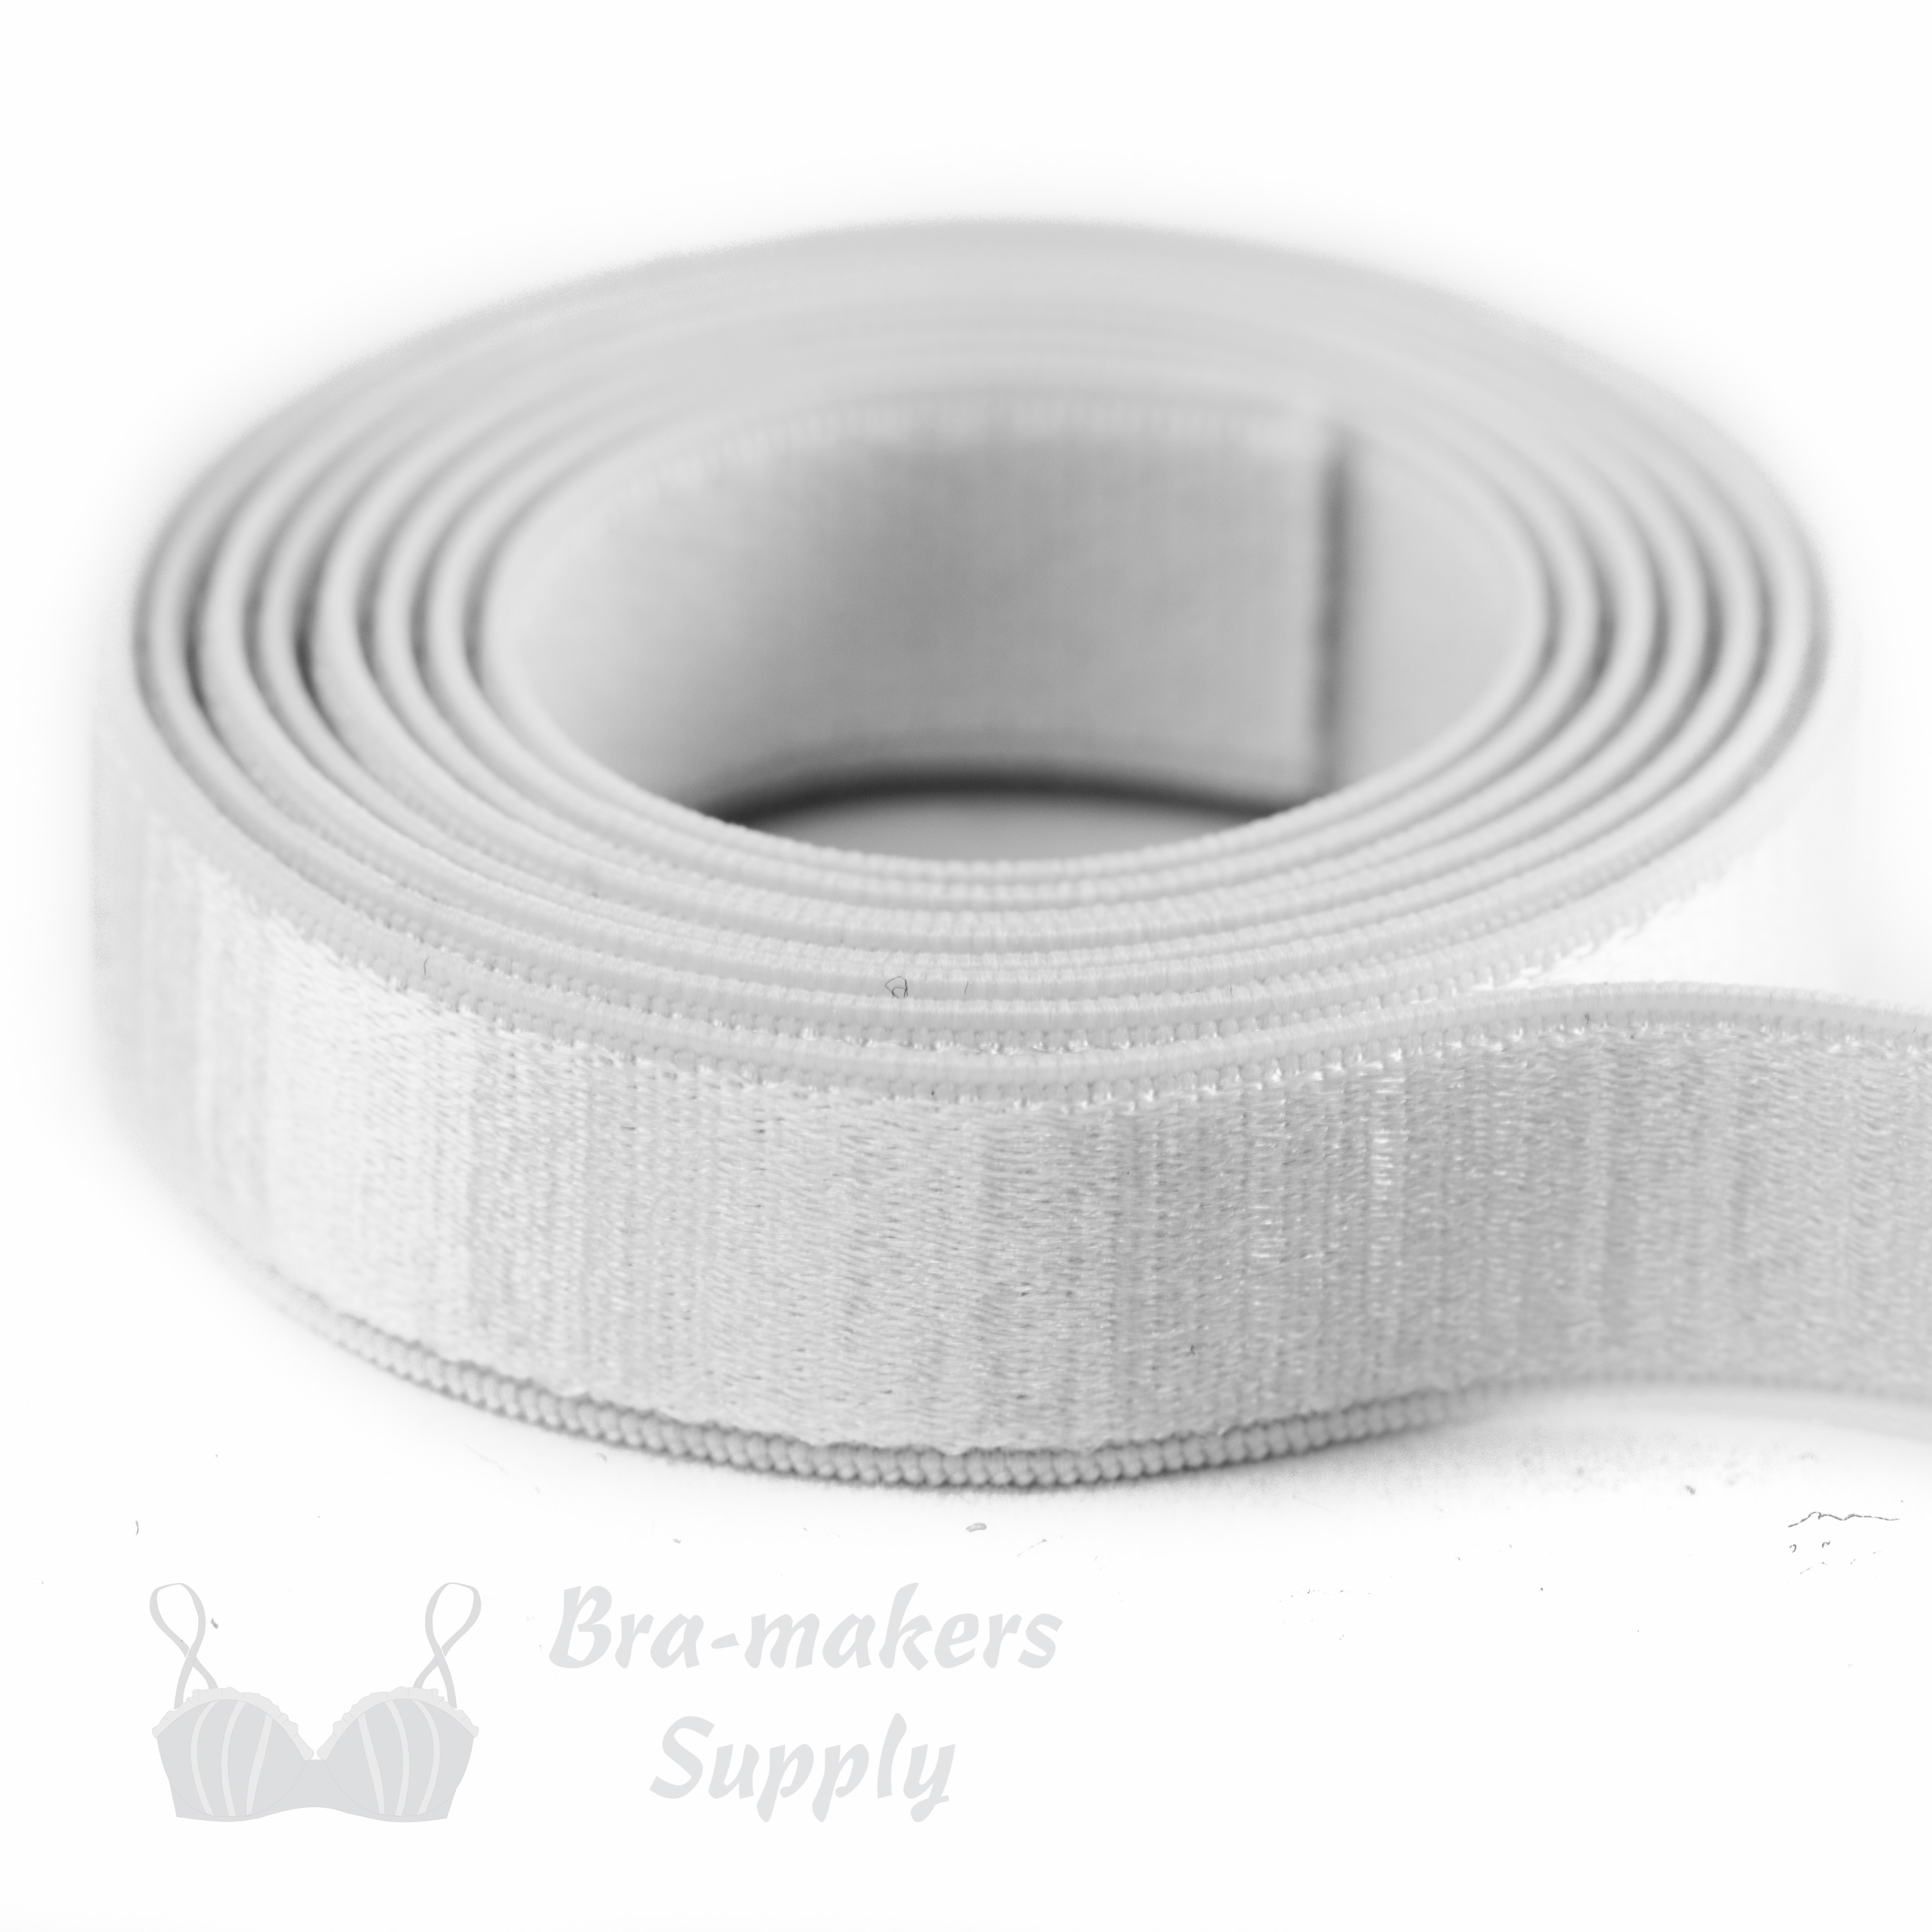 Satin Stripe Strap Elastic Bra Strap Elastic - Bra-Makers Supply